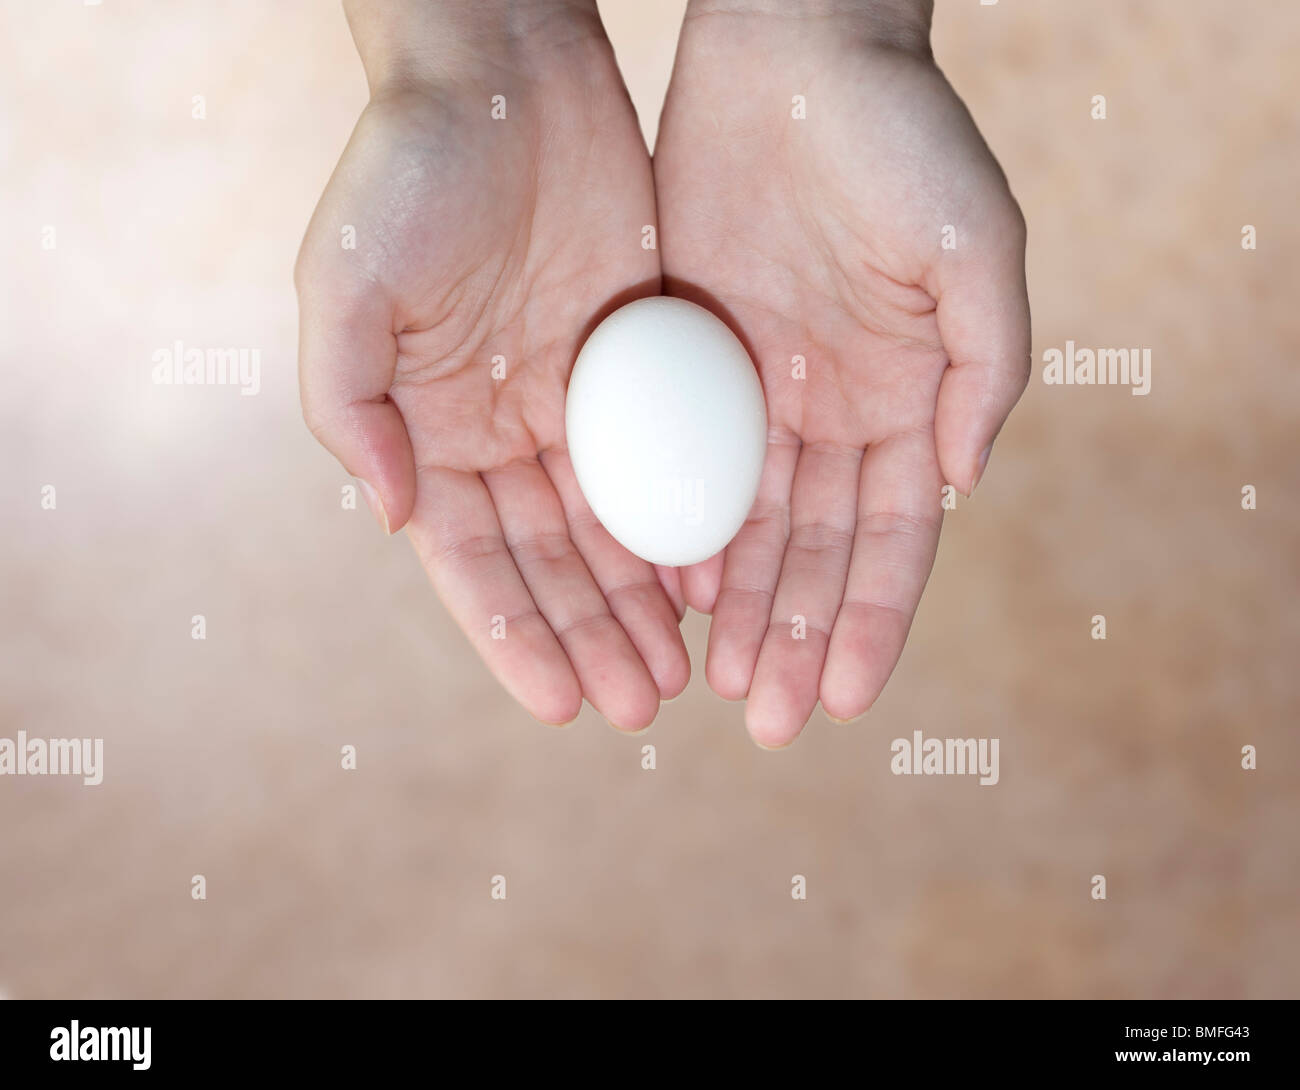 Ein Konzeptbild von einer jungen Frau Hände halten ein Ei auf einem beigen Hintergrund. Konzept der Fruchtbarkeit, Konzept-Reproduktion. Stockfoto